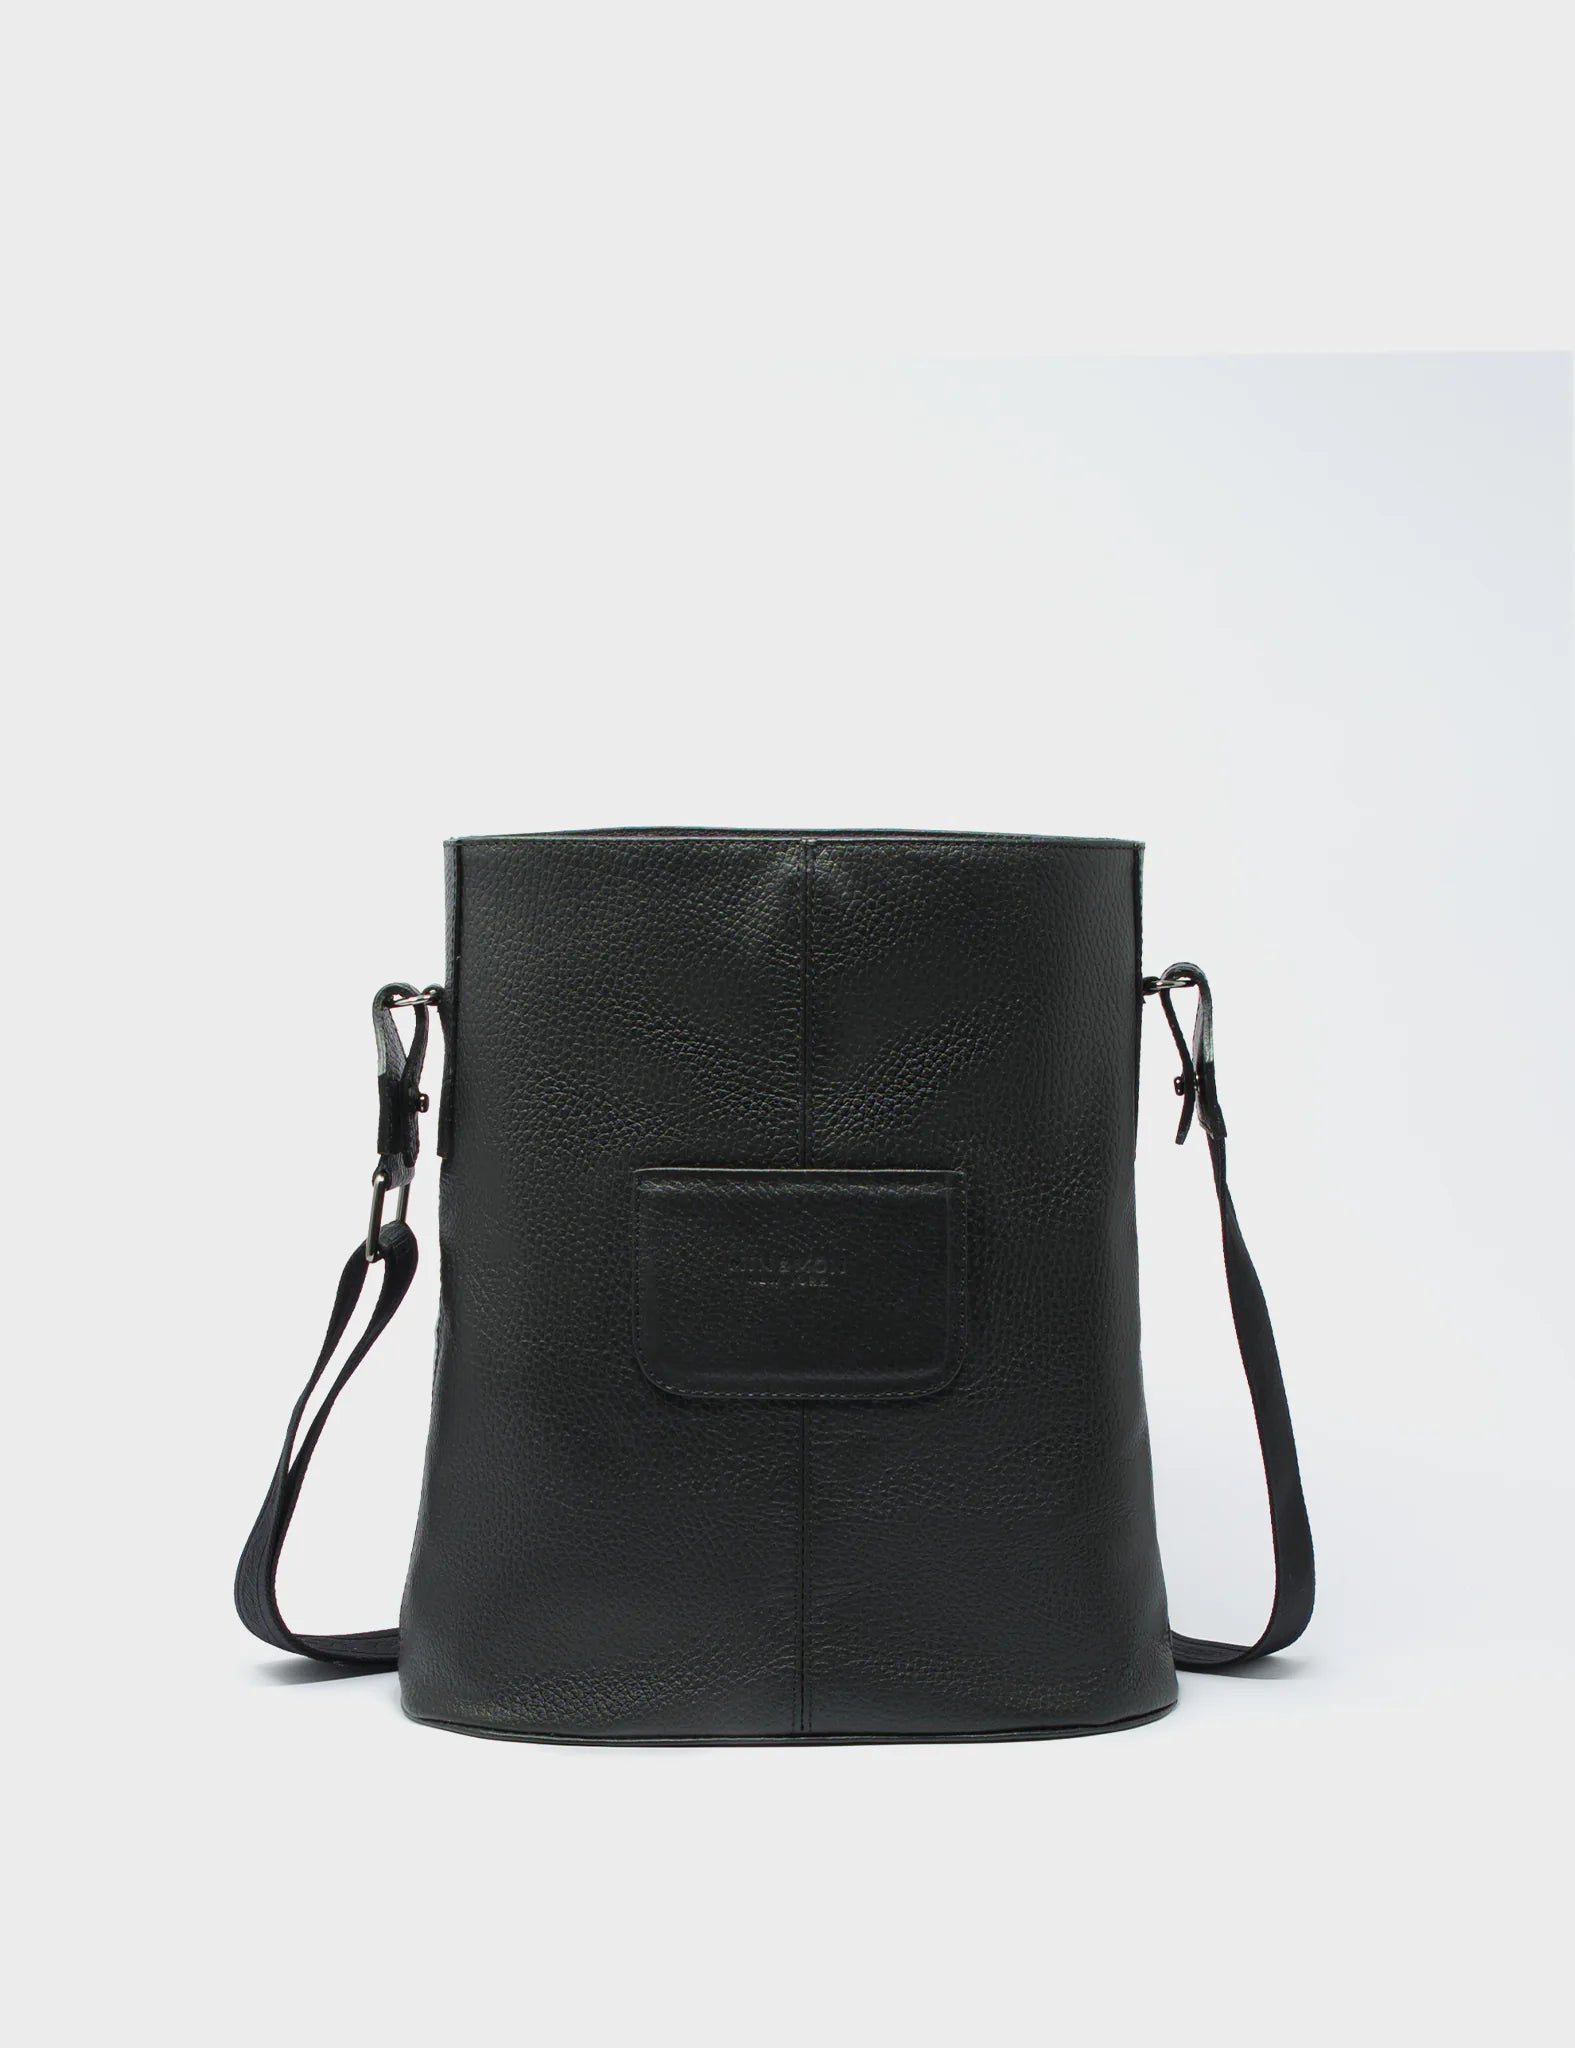 Vincent Black Leather Shoulder Bag - Studio O.C.T.O - Back 